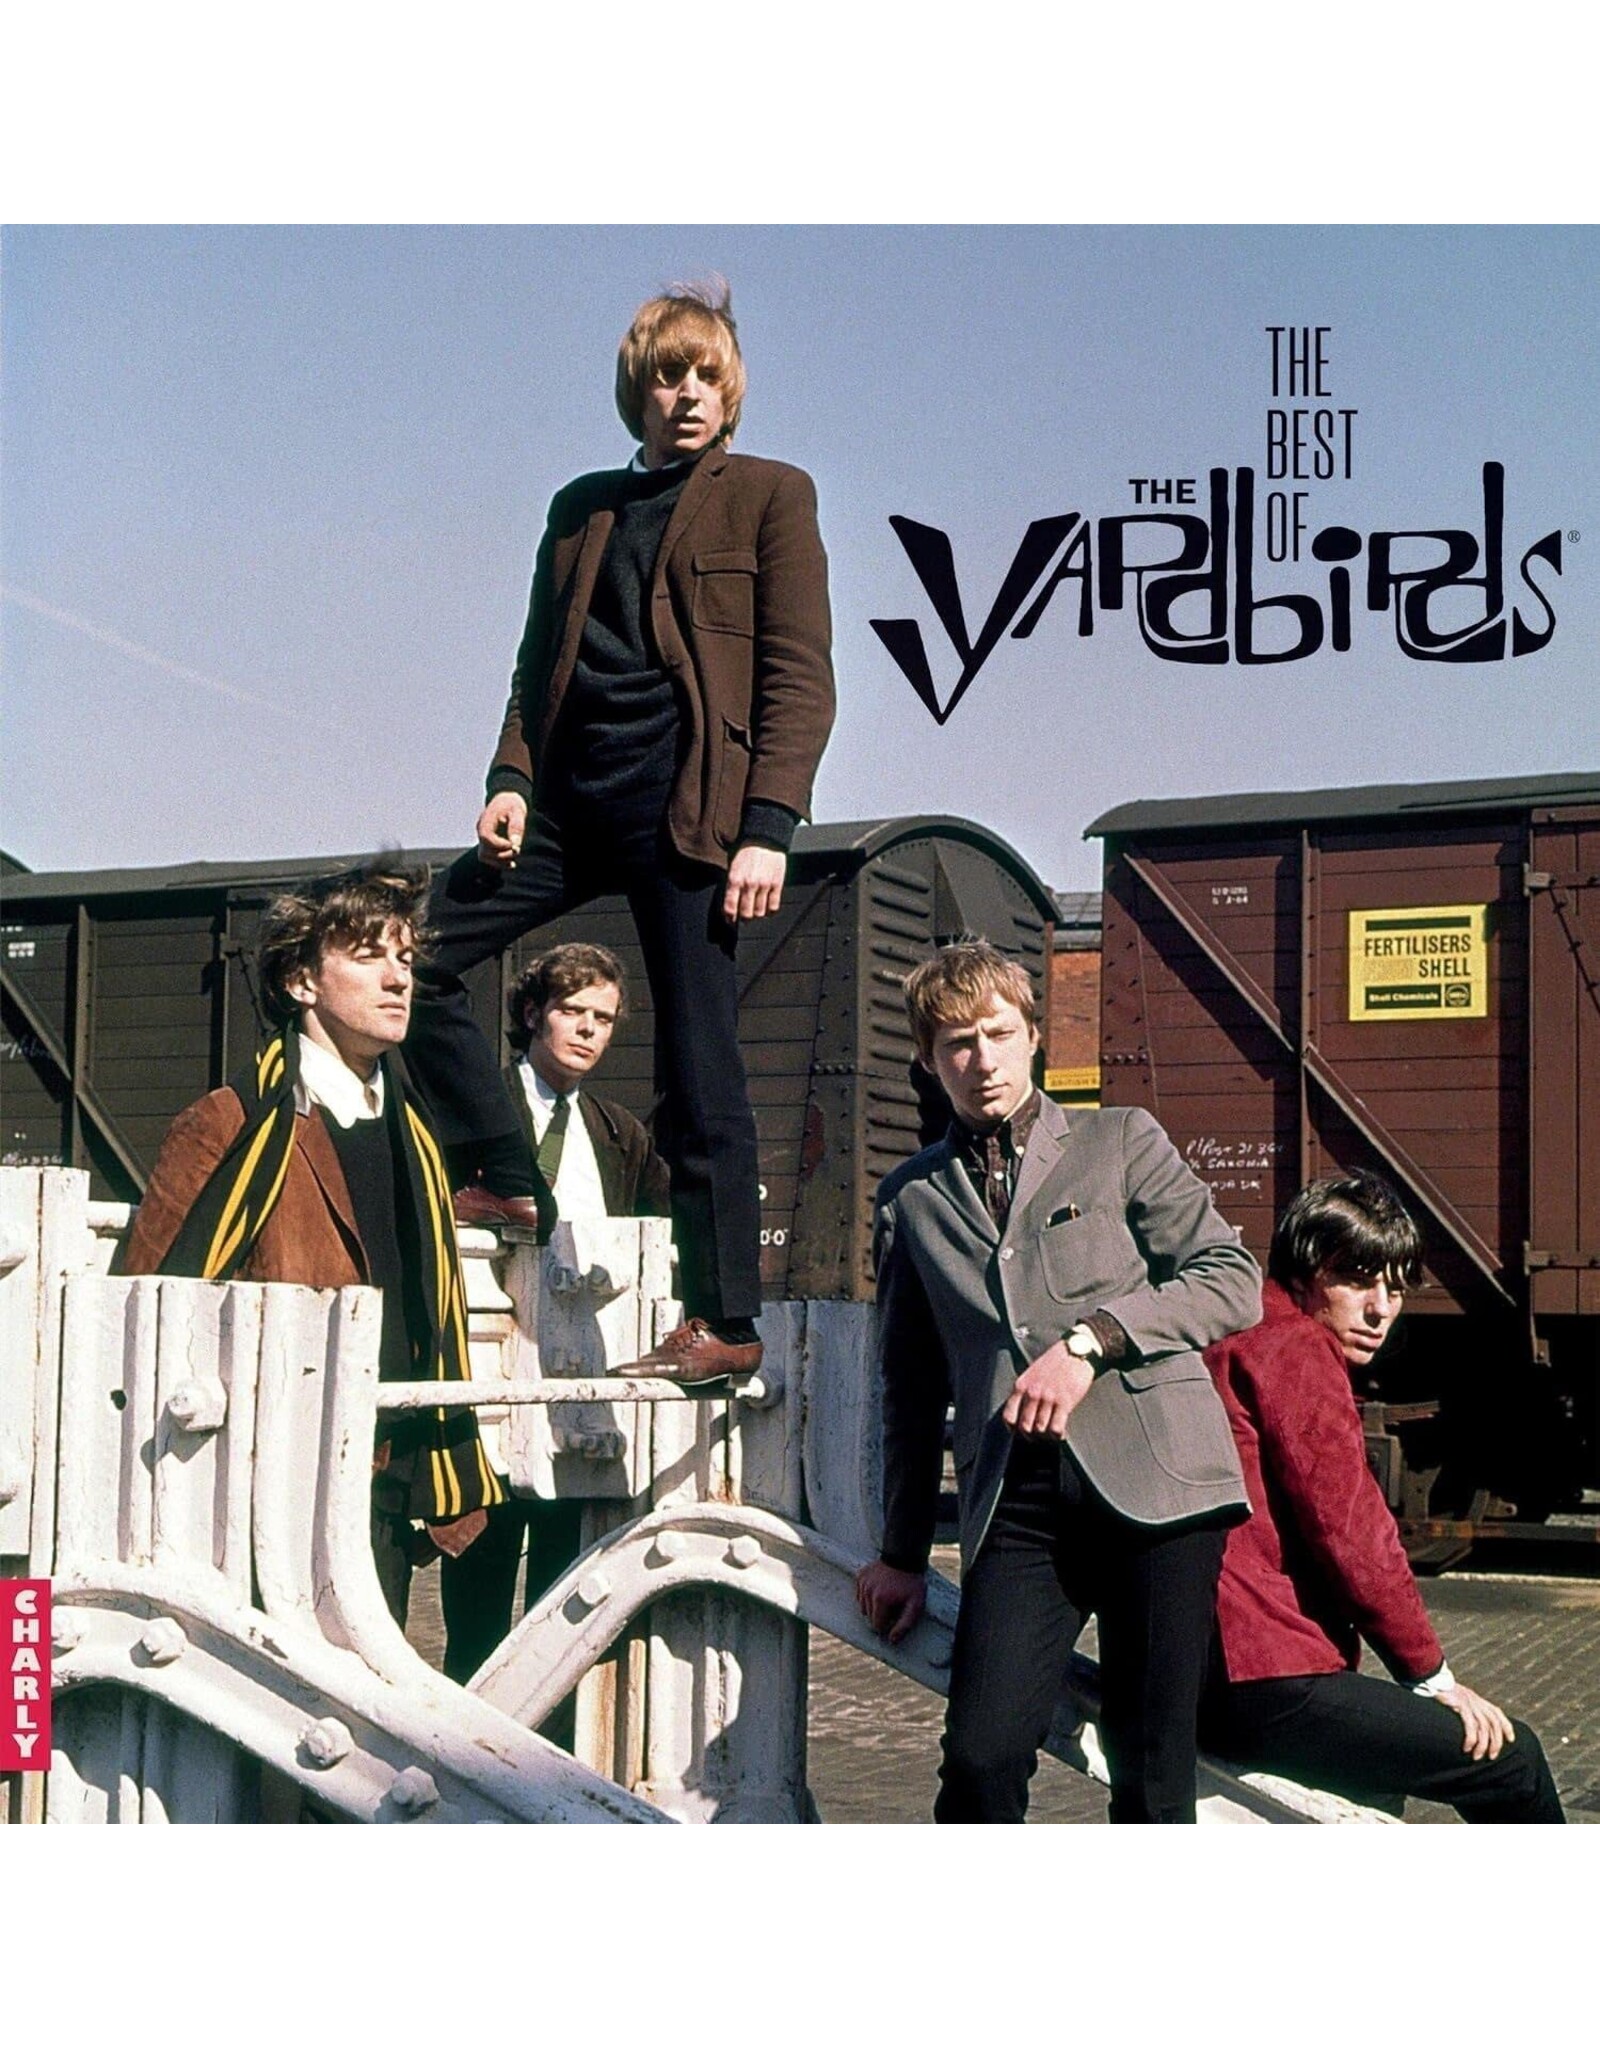 Yardbirds - The Best Of The Yardbirds (Blue Vinyl)